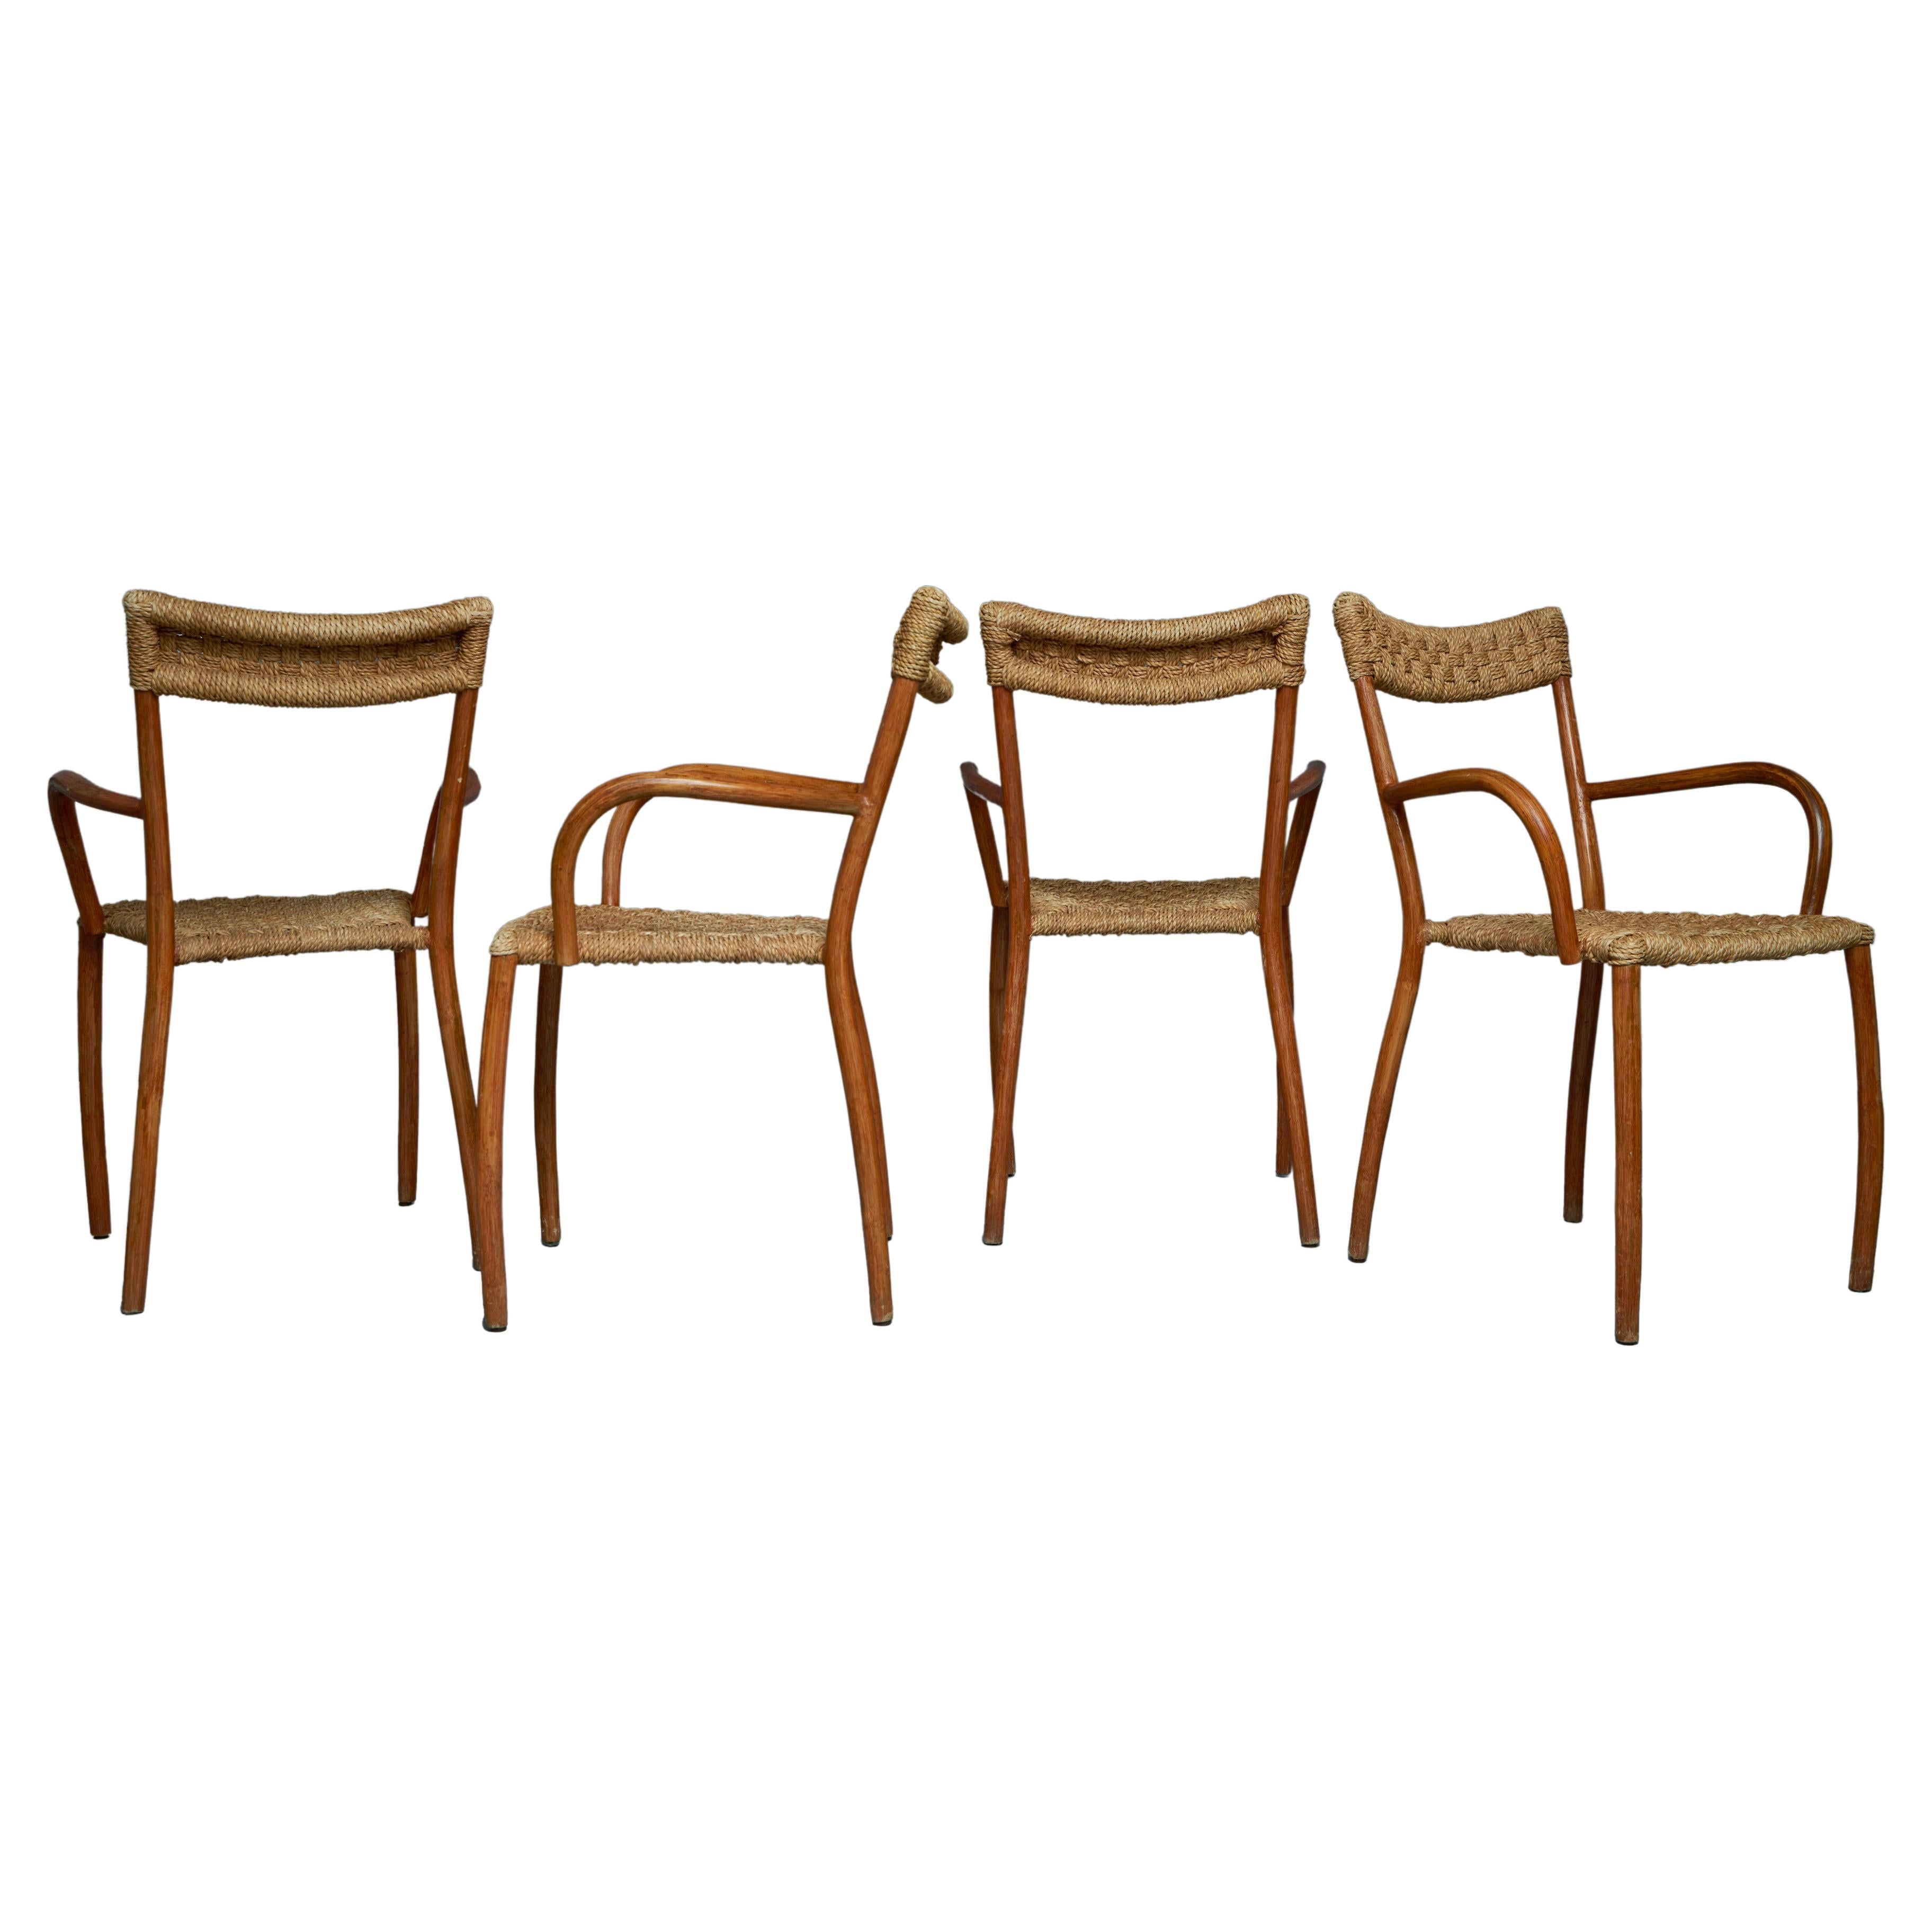 1960s Dutch Chairs